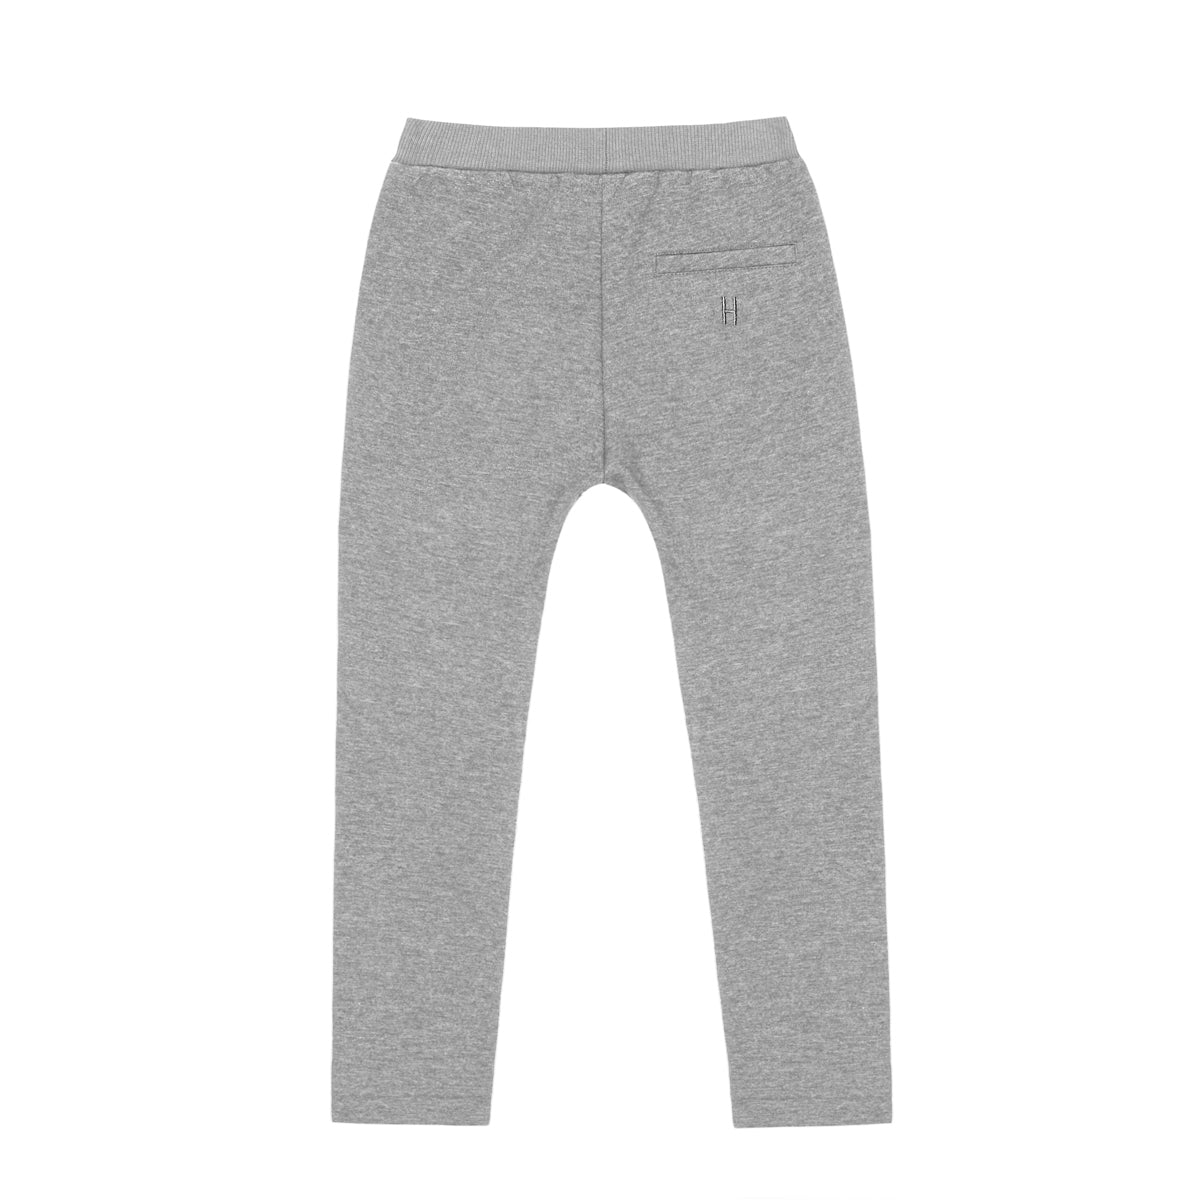 LITTLE HEDONIST - Pantalon gris confortable ample neuf - 2 ans